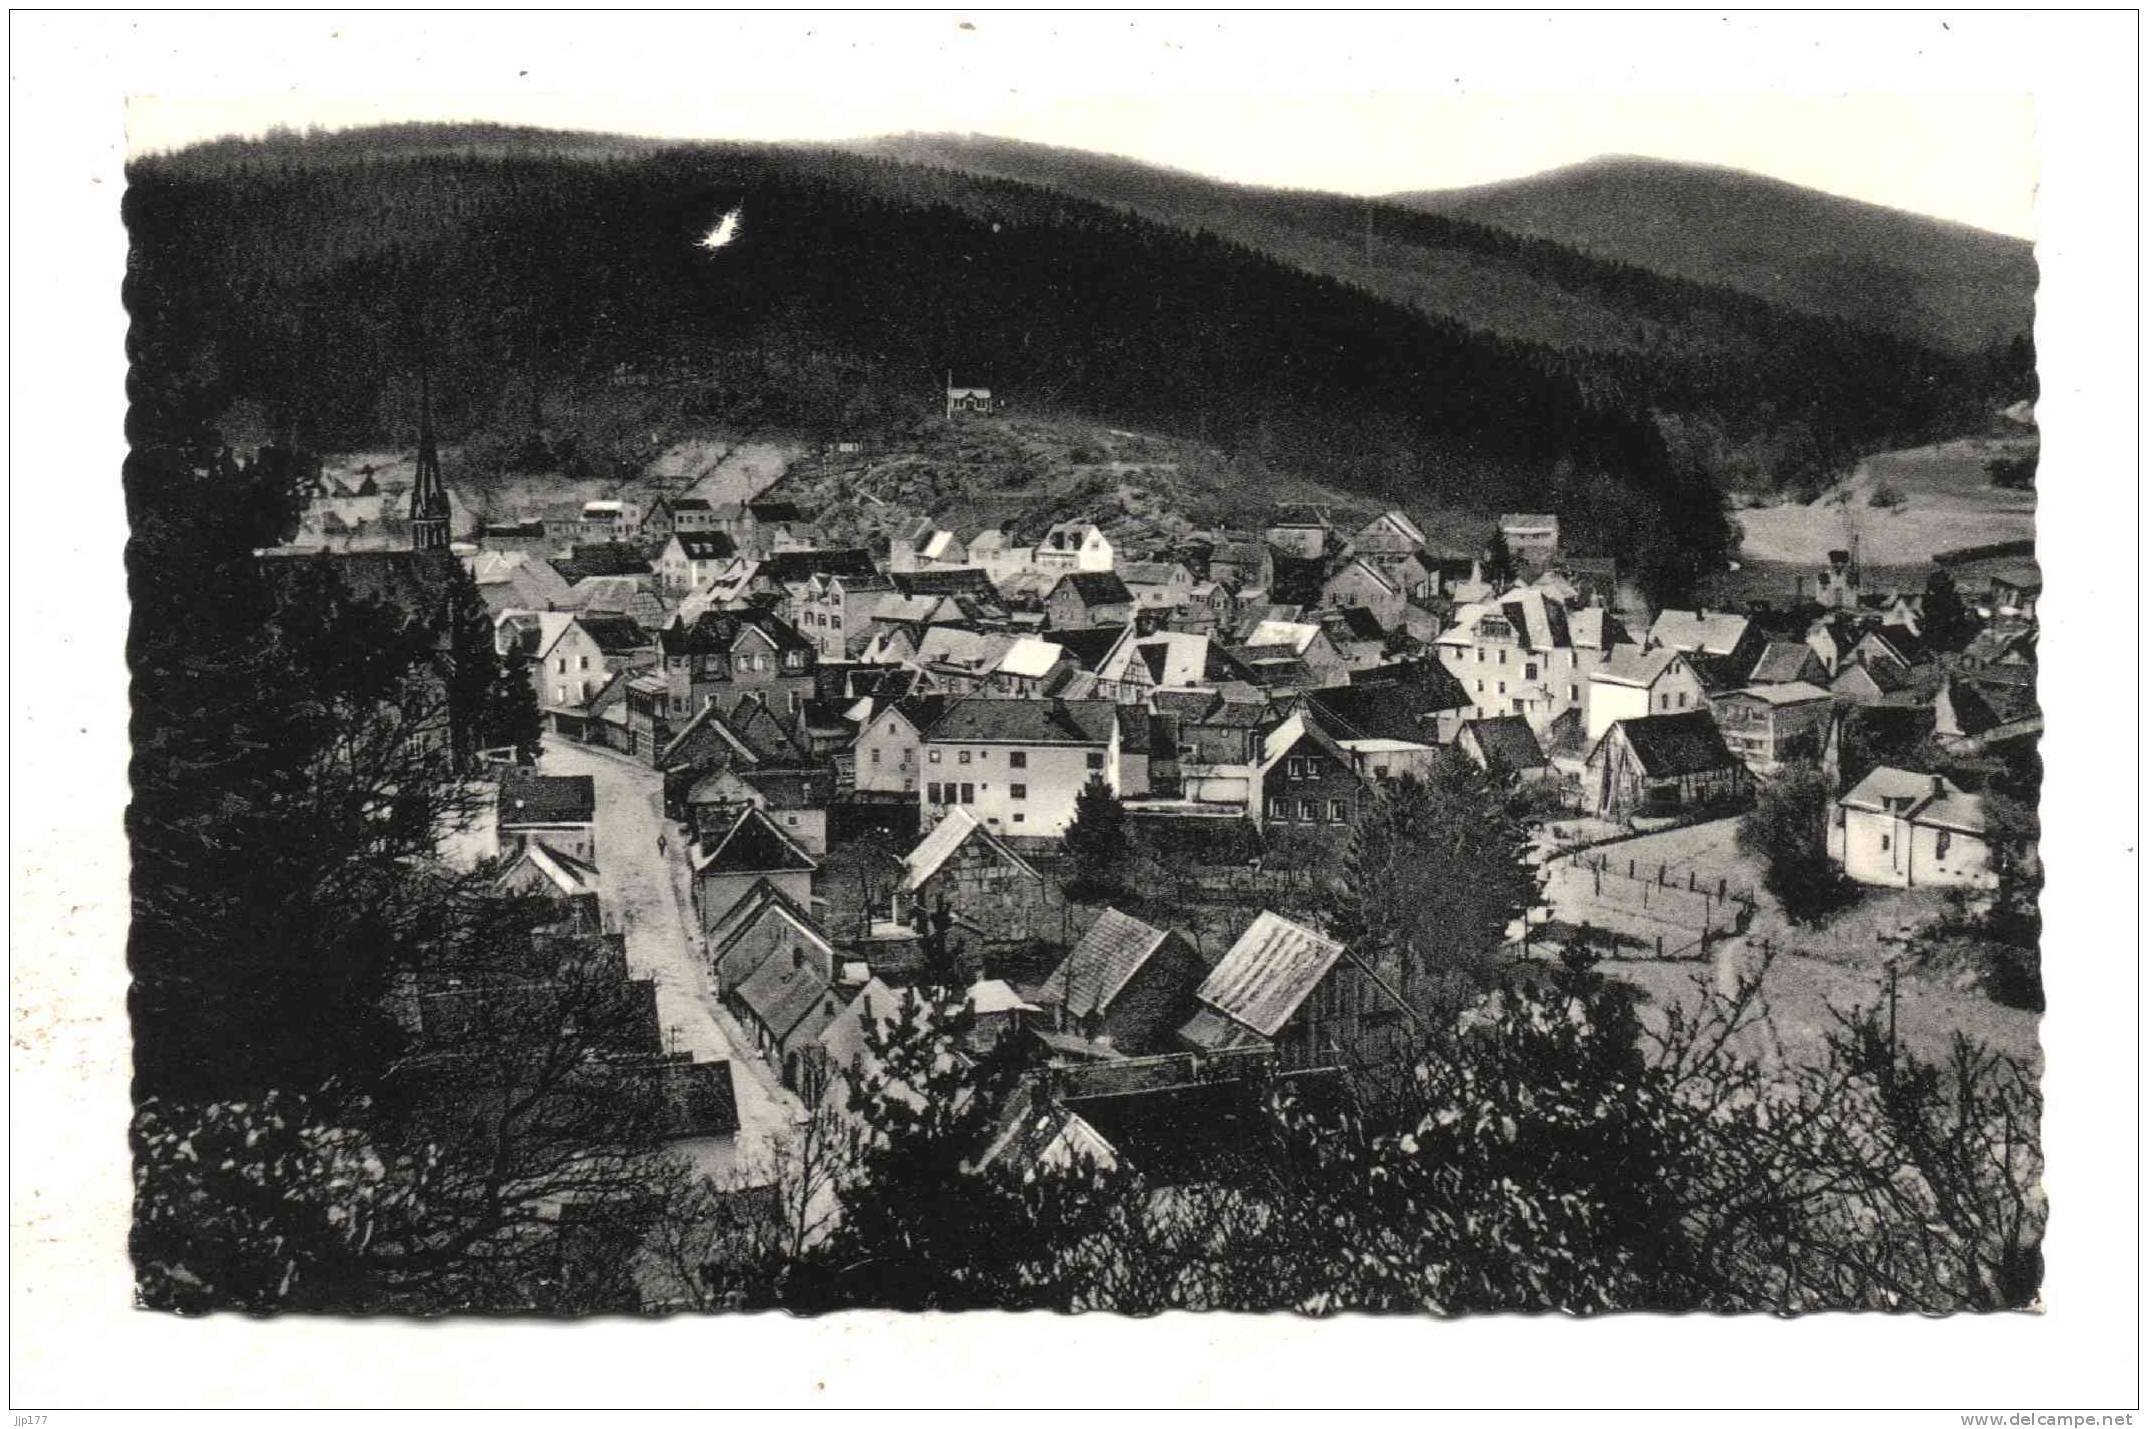 Luftkurort Schmitten Im Taunus Hochtaunus Ecrite Geschrieben En 1960 Vue Panoramique Panoramische Sicht - Taunus